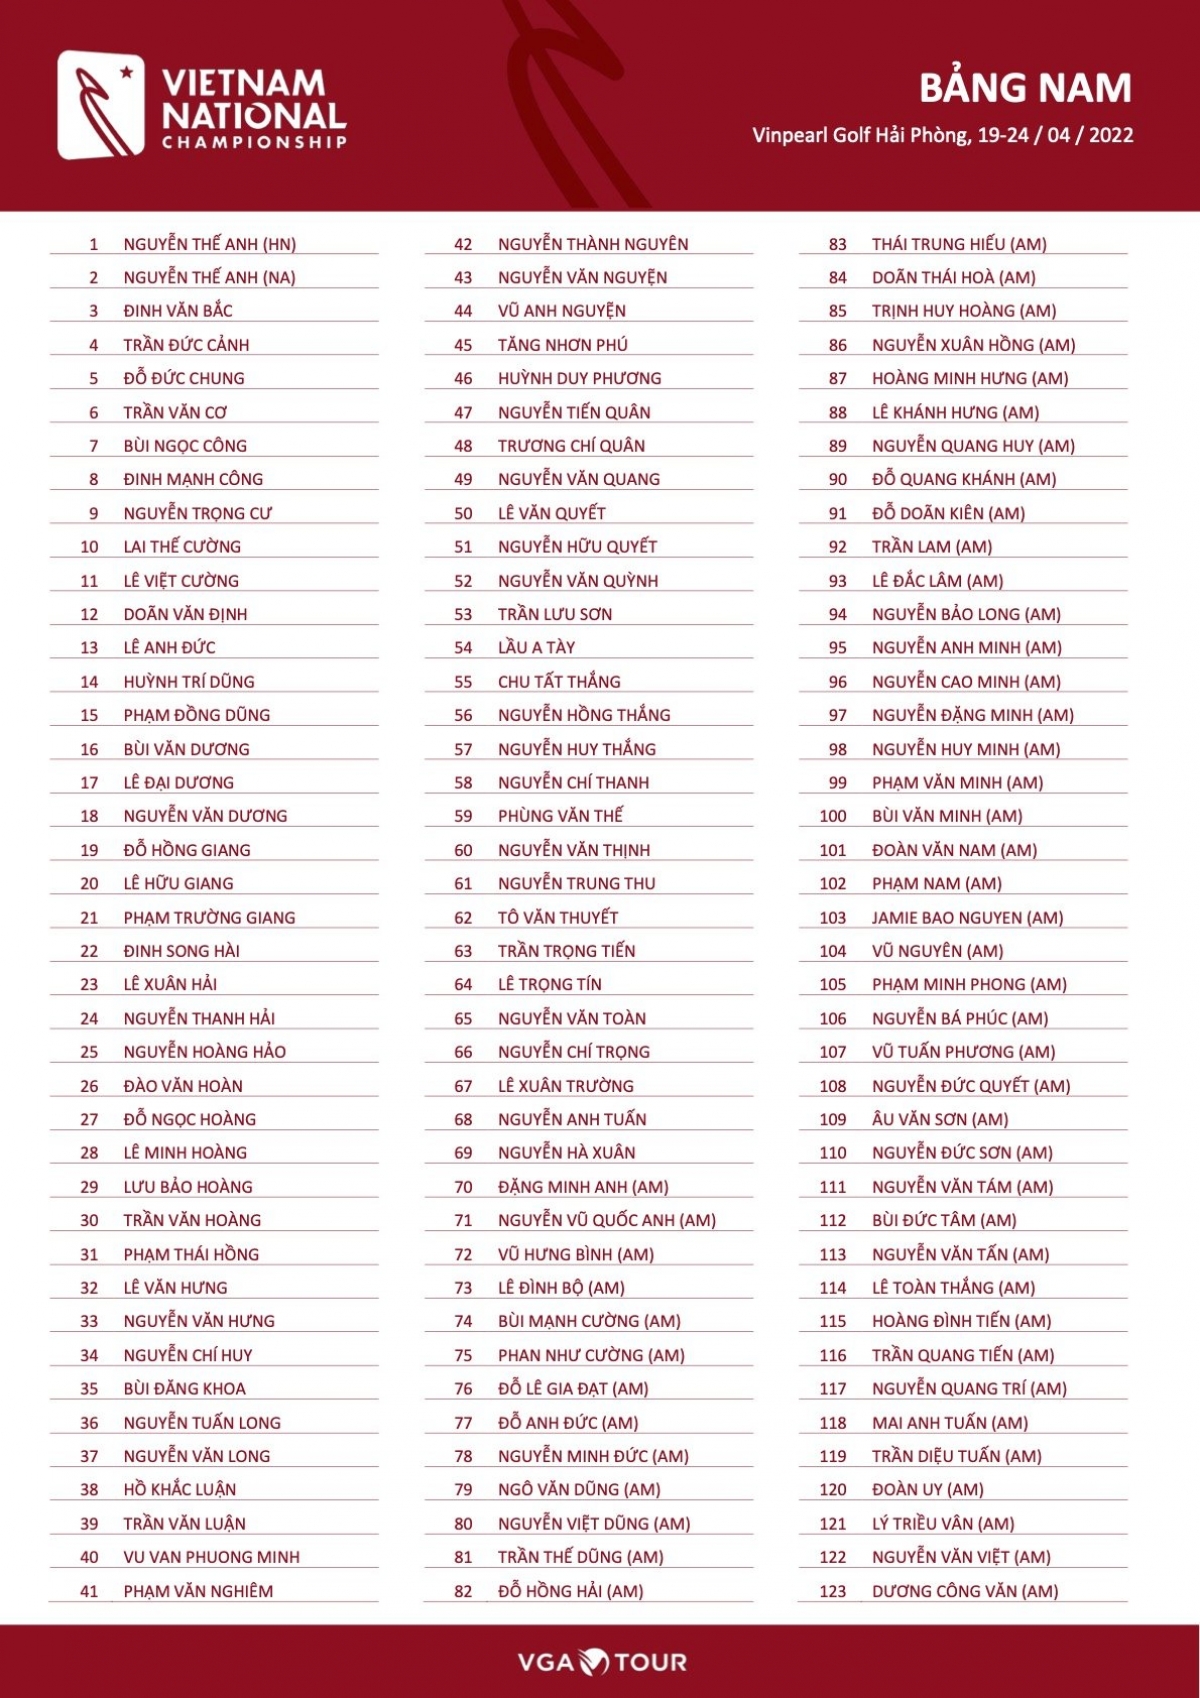 Danh sách các golfer nam tham dự giải đấu năm nay